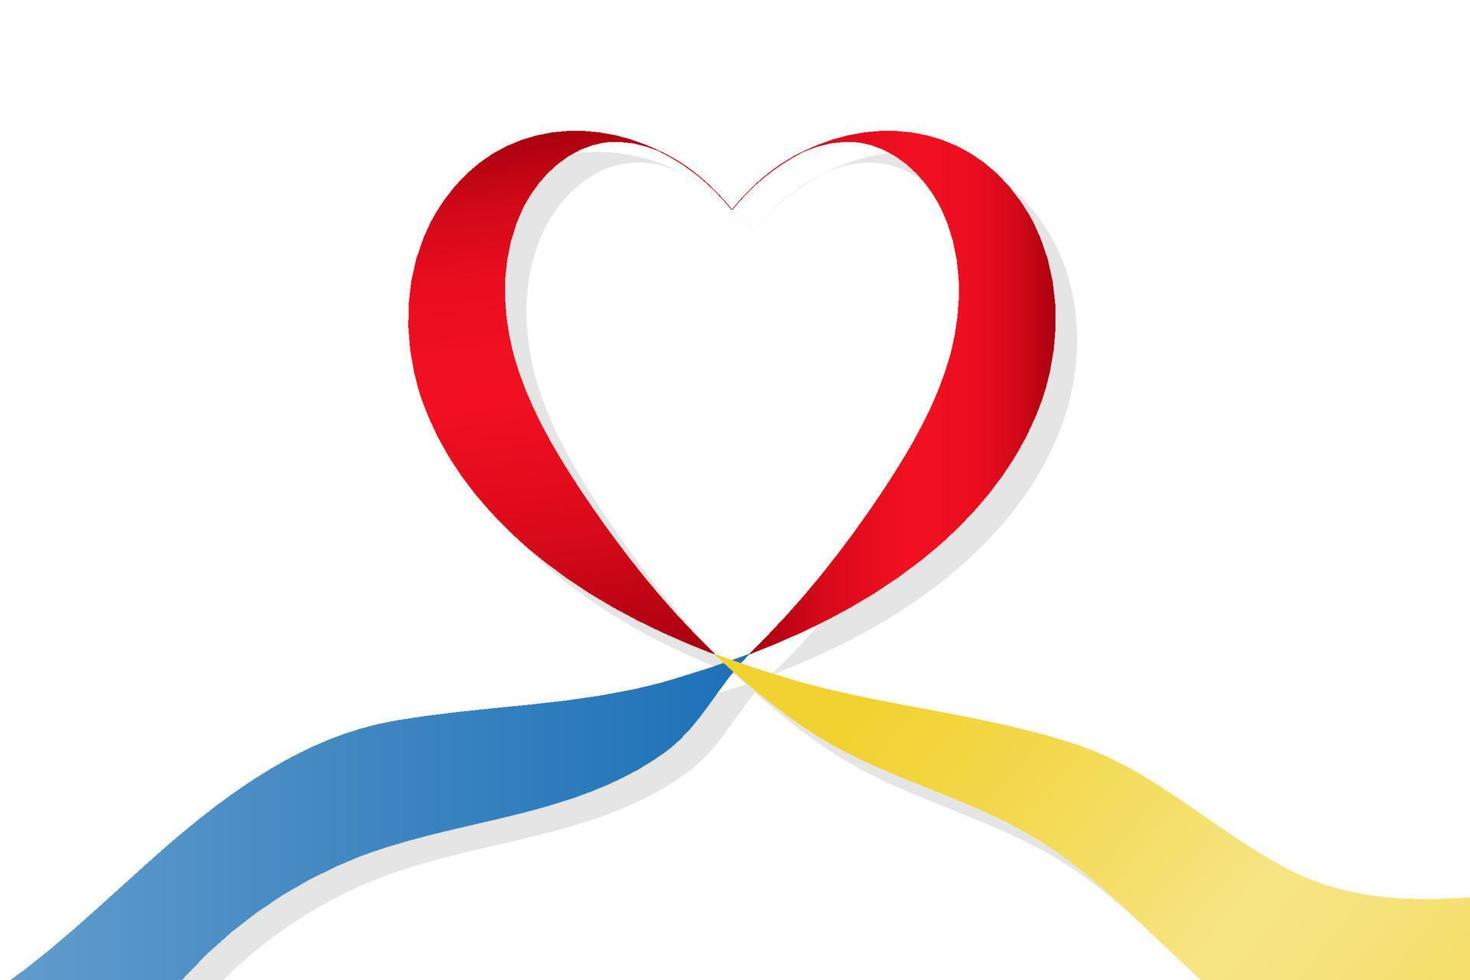 ruban coeur rouge aux couleurs bleu et jaune. drapeau ukrainien. illustration vectorielle. vecteur